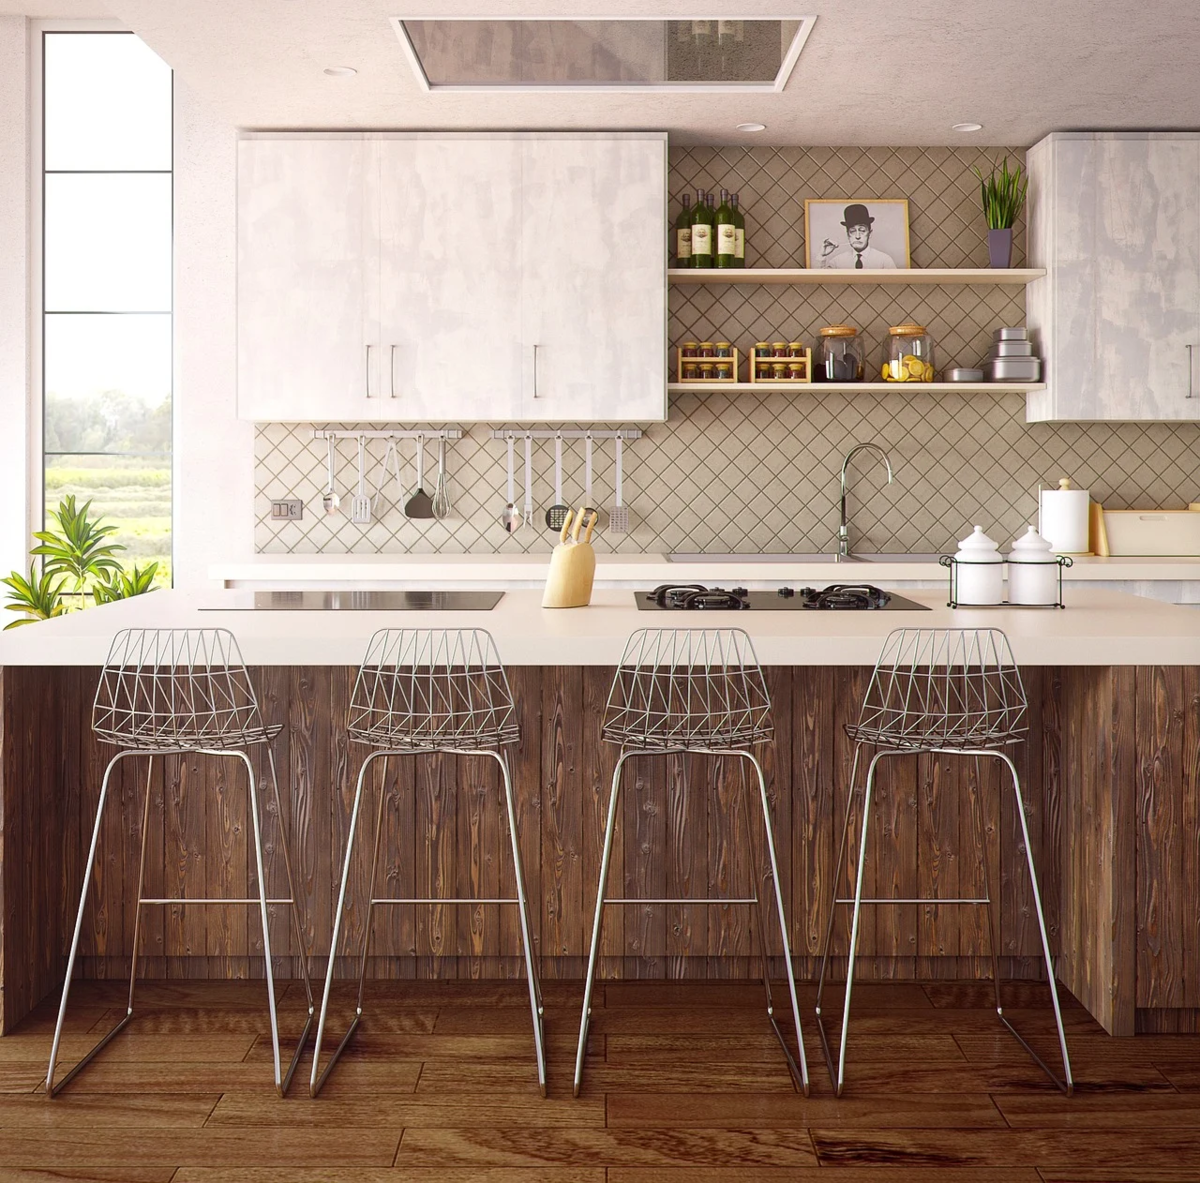 Кухонный фартук - центр притяжения взгляда в этом помещении, обязательно продумывайте его стиль и умело сочетайте с общим видом